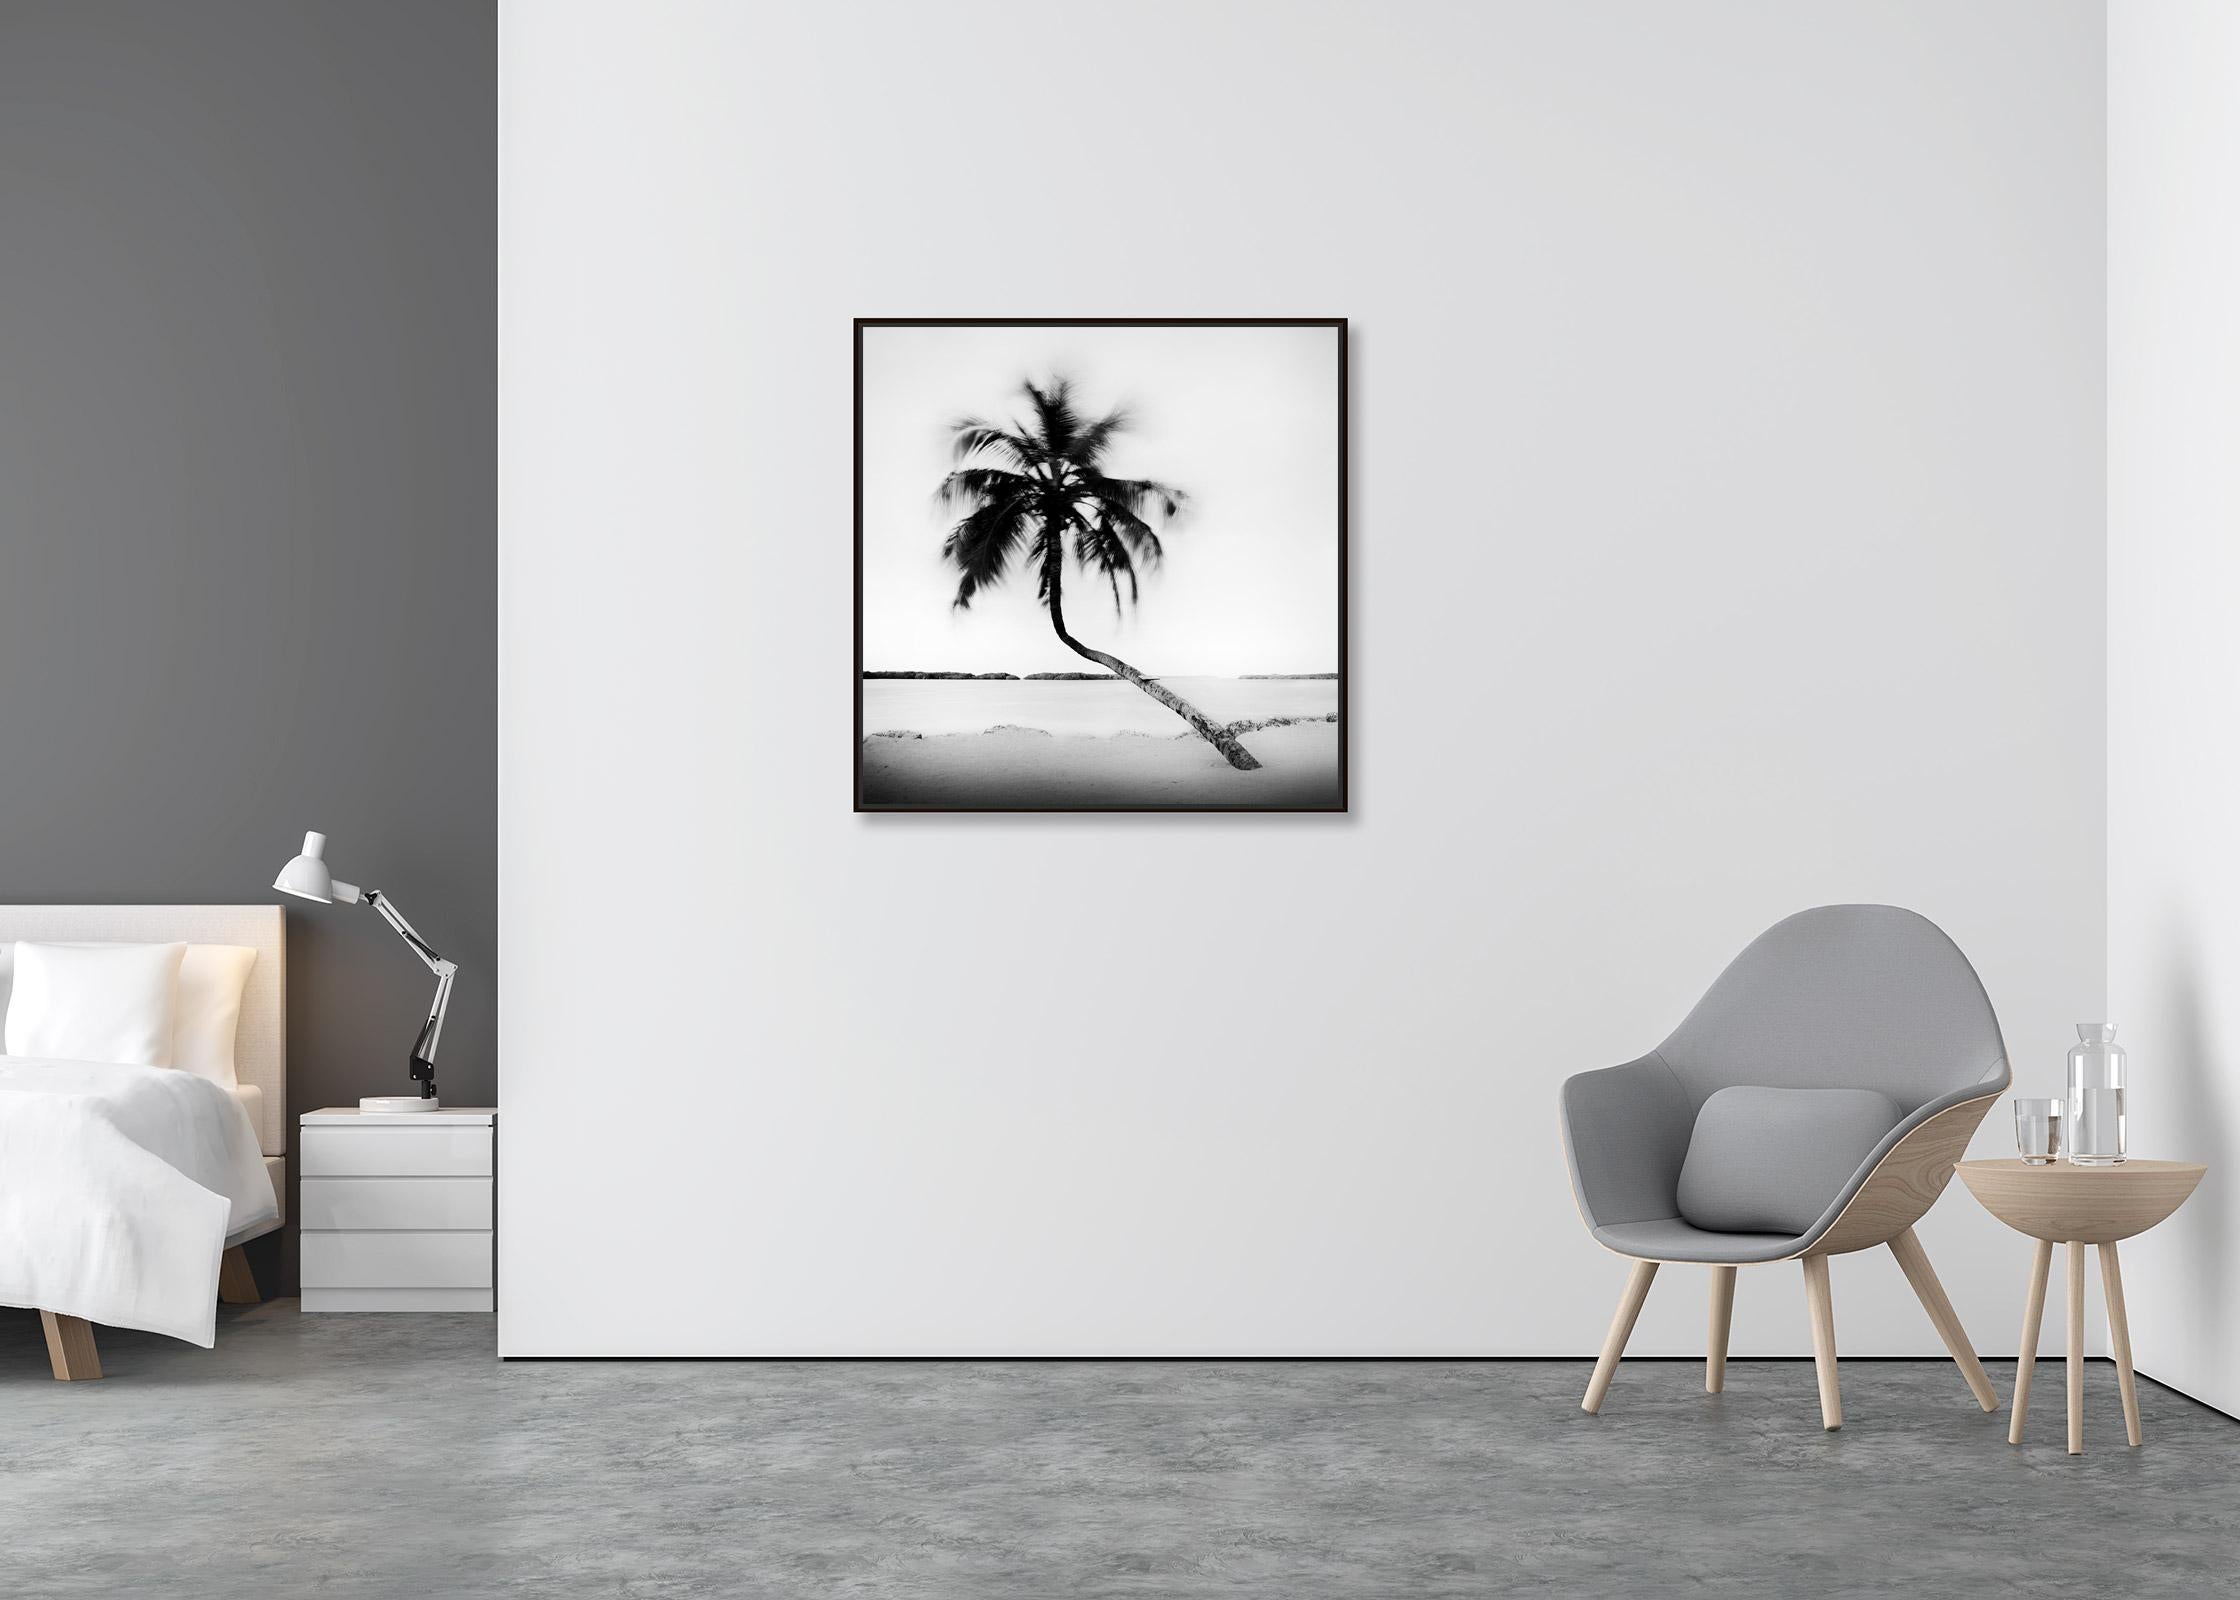 Bent Palm, Beach, Florida, USA, Schwarz-Weiß-Fotografie, Landschaft (Zeitgenössisch), Photograph, von Gerald Berghammer, Ina Forstinger